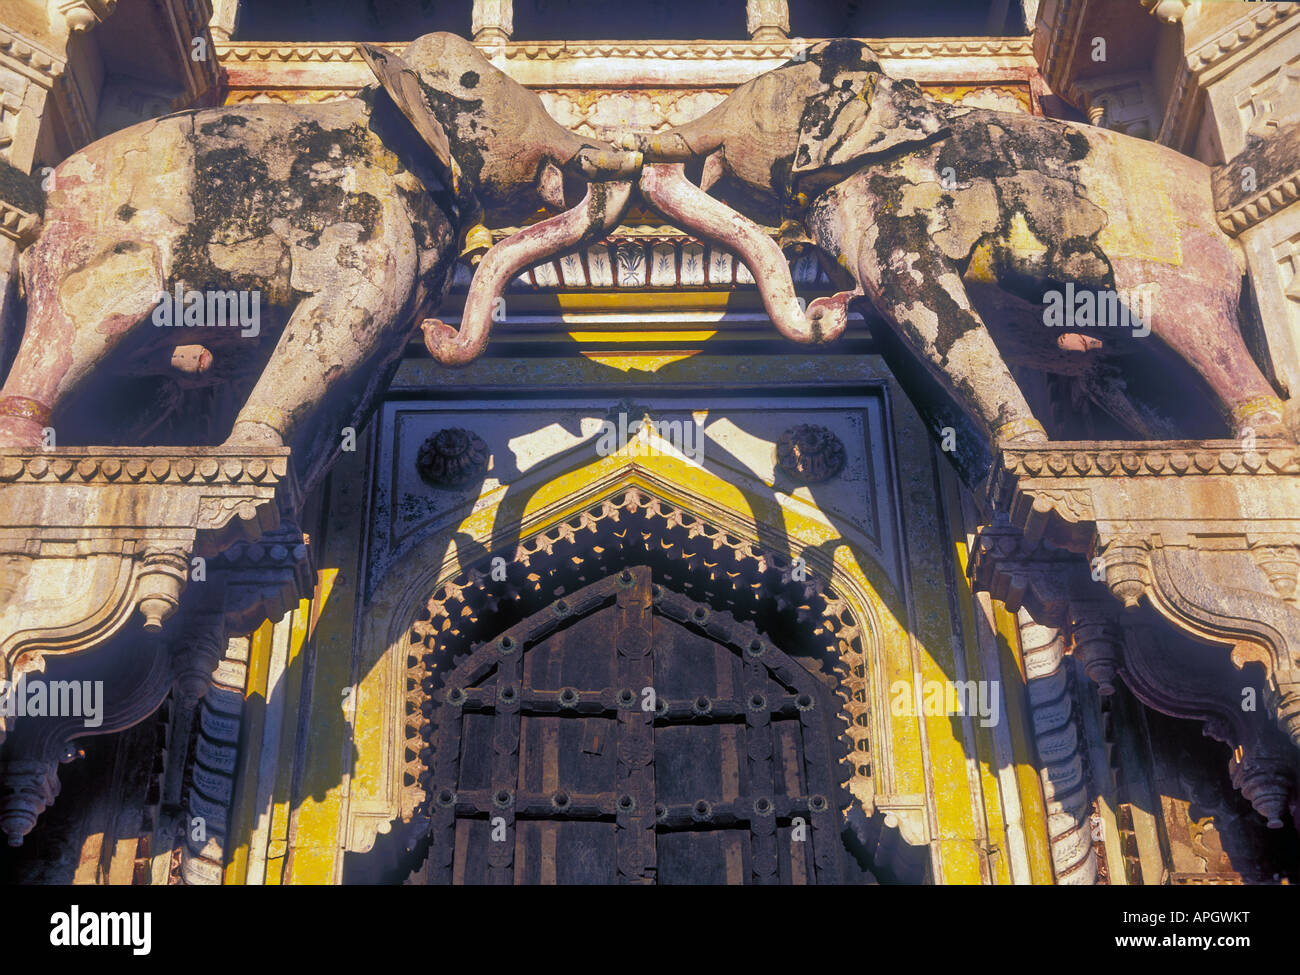 La porte de l'éléphant, City Palace, Bundi, Rajasthan, Inde Banque D'Images